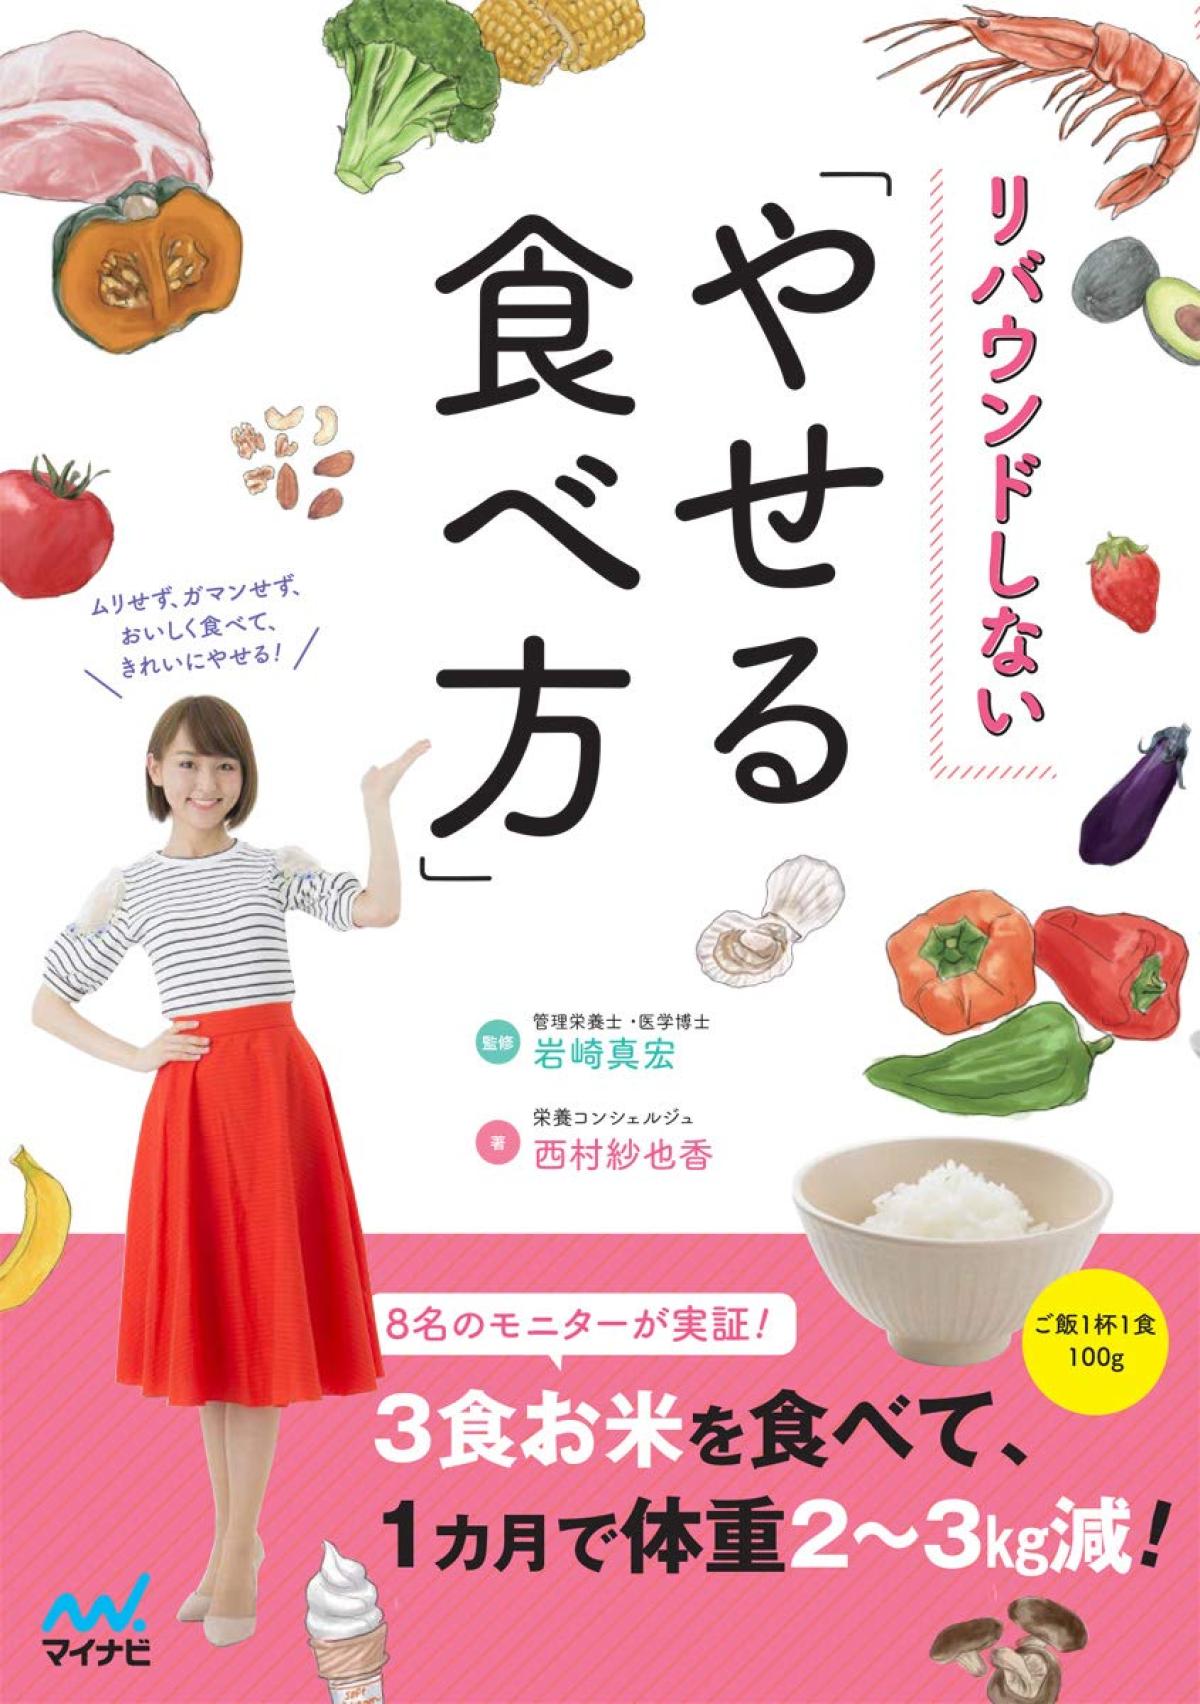 西村紗也香さんが書籍を発売されました！【栄養コンシェルジュ取得後のご活躍】